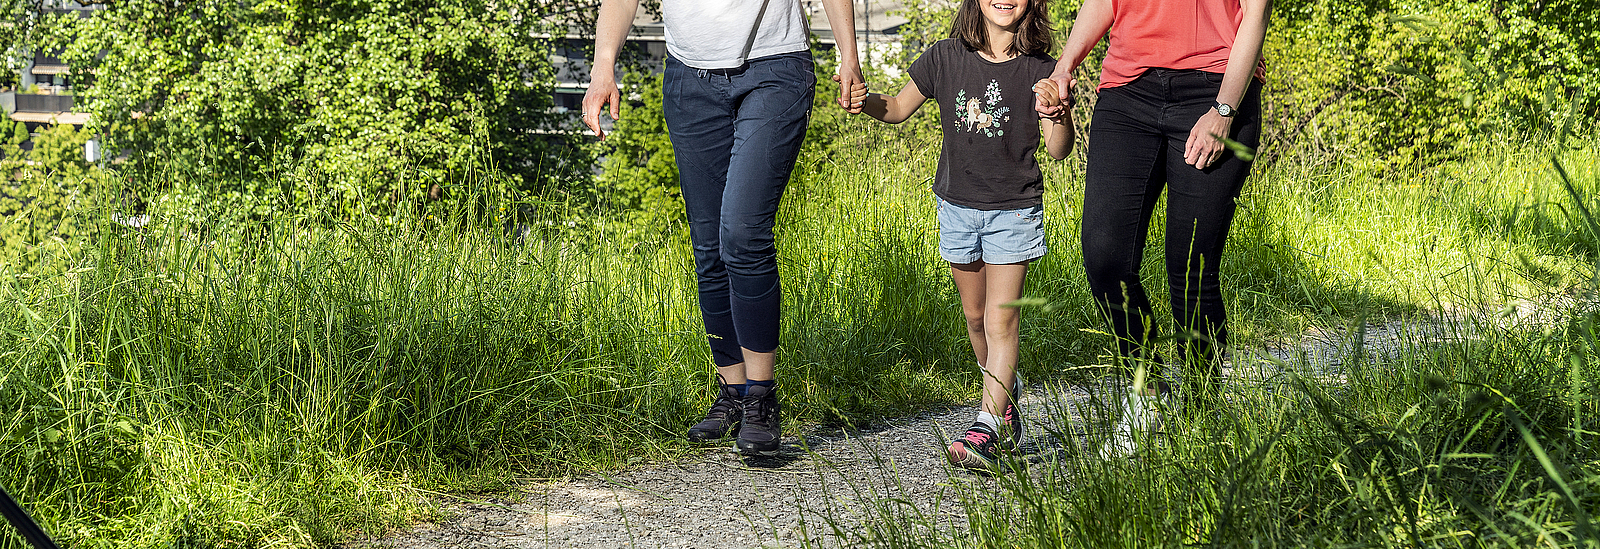 Zwei Frauen und ein Mädchen spazieren auf einem Weg in der Natur.